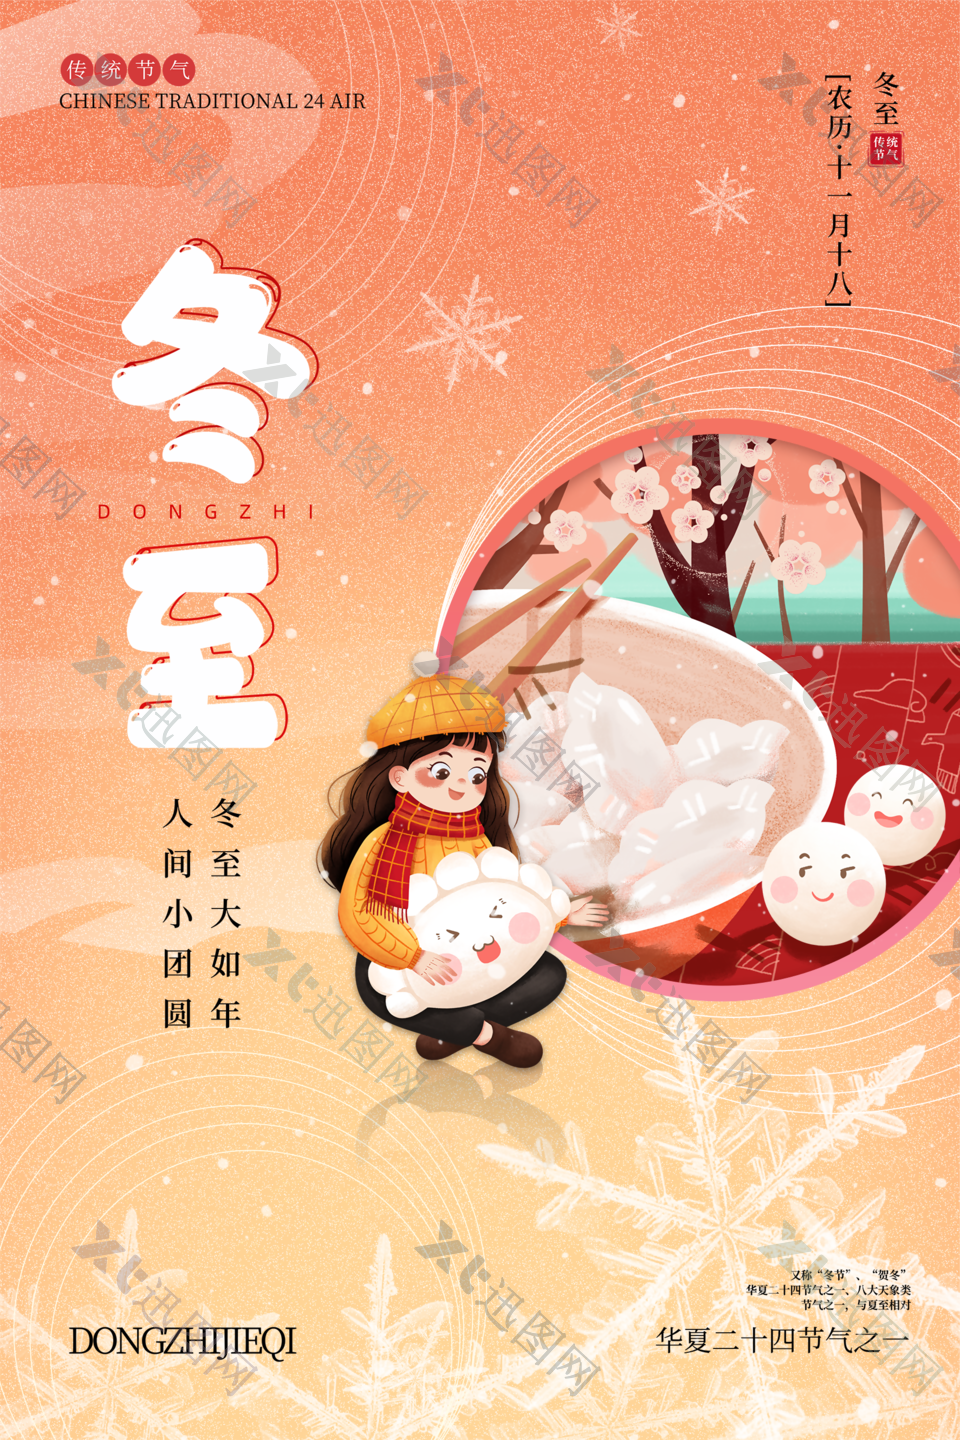 24传统中国节气之冬至海报下载